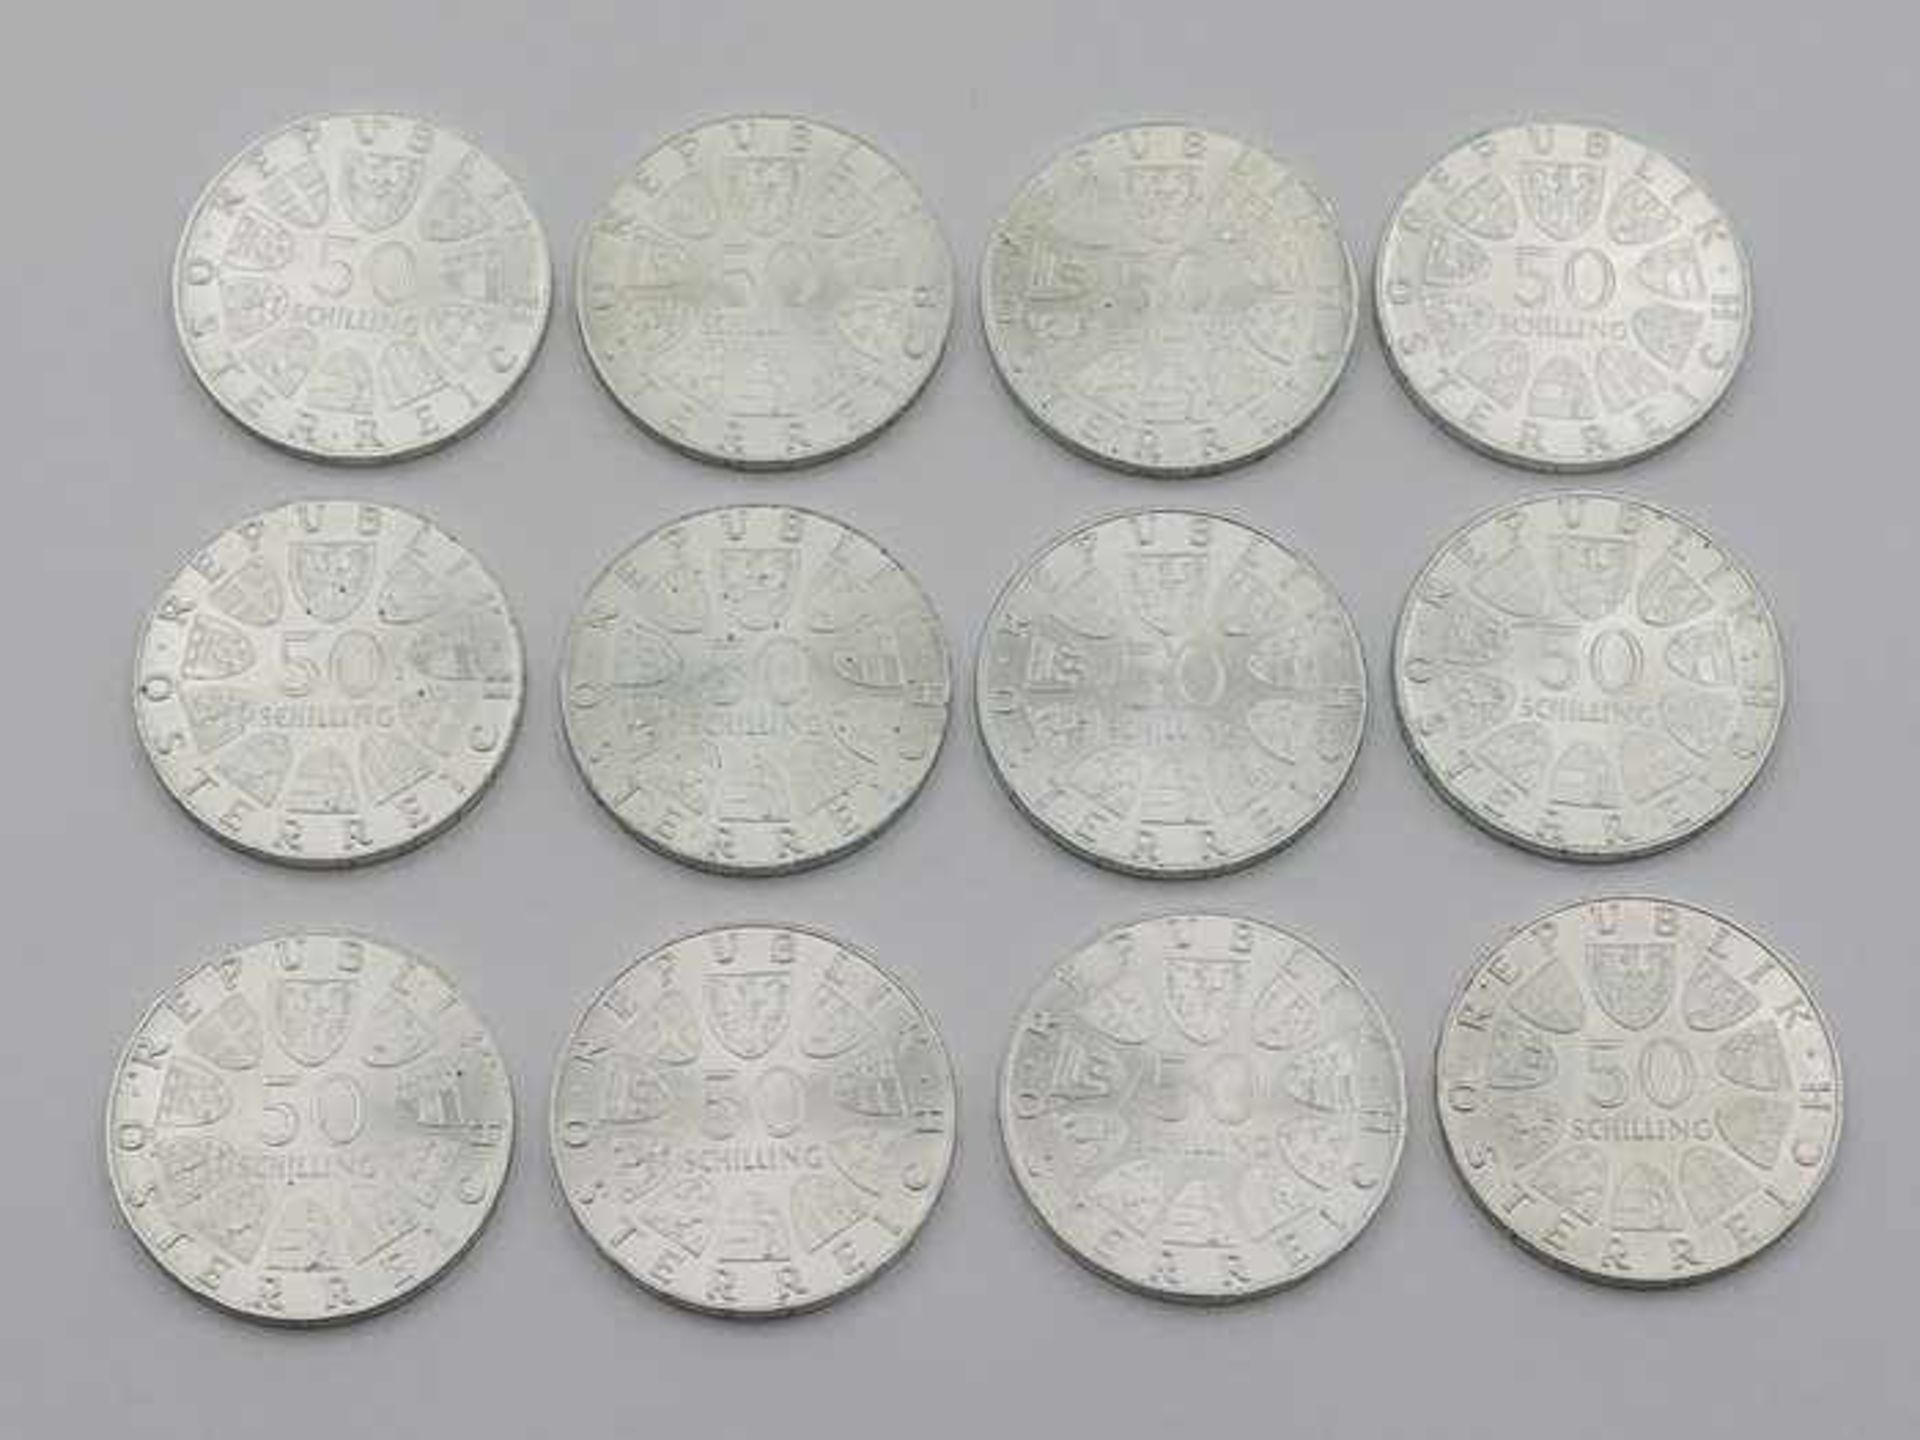 Münzen - ÖsterreichSi 900, Gedenkmünzen, 12 x 50 Schilling, Republik Österreich, av. versch. Motive, - Bild 2 aus 2